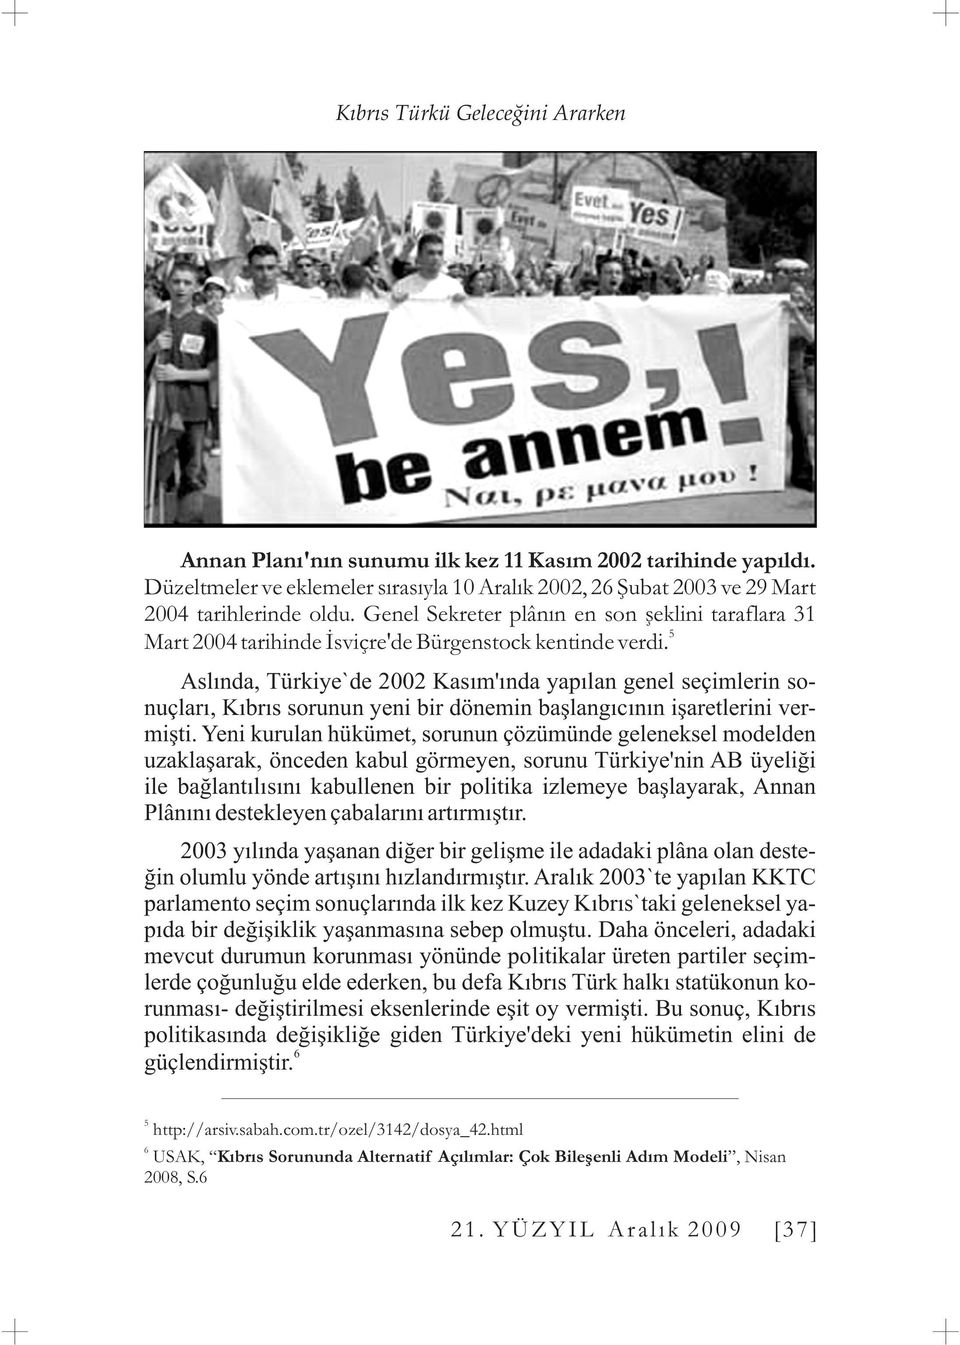 Aslýnda, Türkiye`de 2002 Kasým'ýnda yapýlan genel seçimlerin sonuçlarý, Kýbrýs sorunun yeni bir dönemin baþlangýcýnýn iþaretlerini vermiþti.